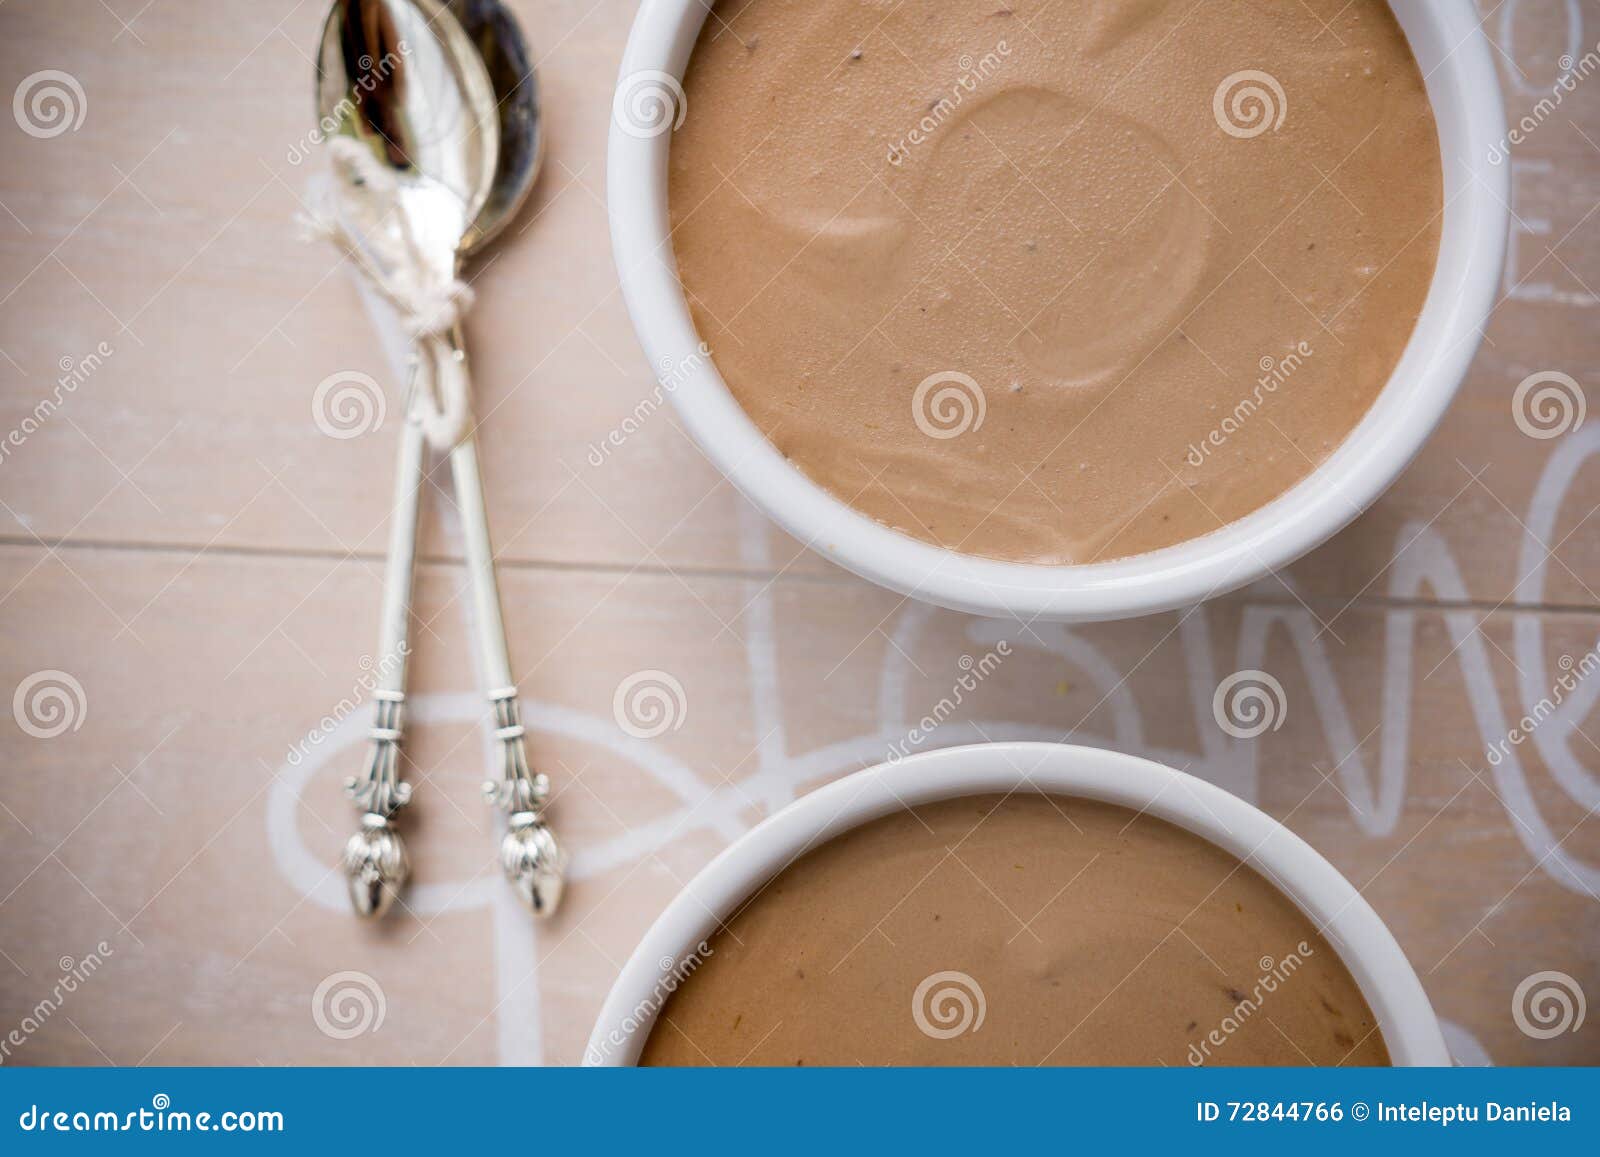 奶油甜点 库存图片. 图片 包括有 巧克力, 奶油甜点, 咖啡馆, 点心, 奶油, 抛光, 食物, 蓬松, 甜点 - 247301